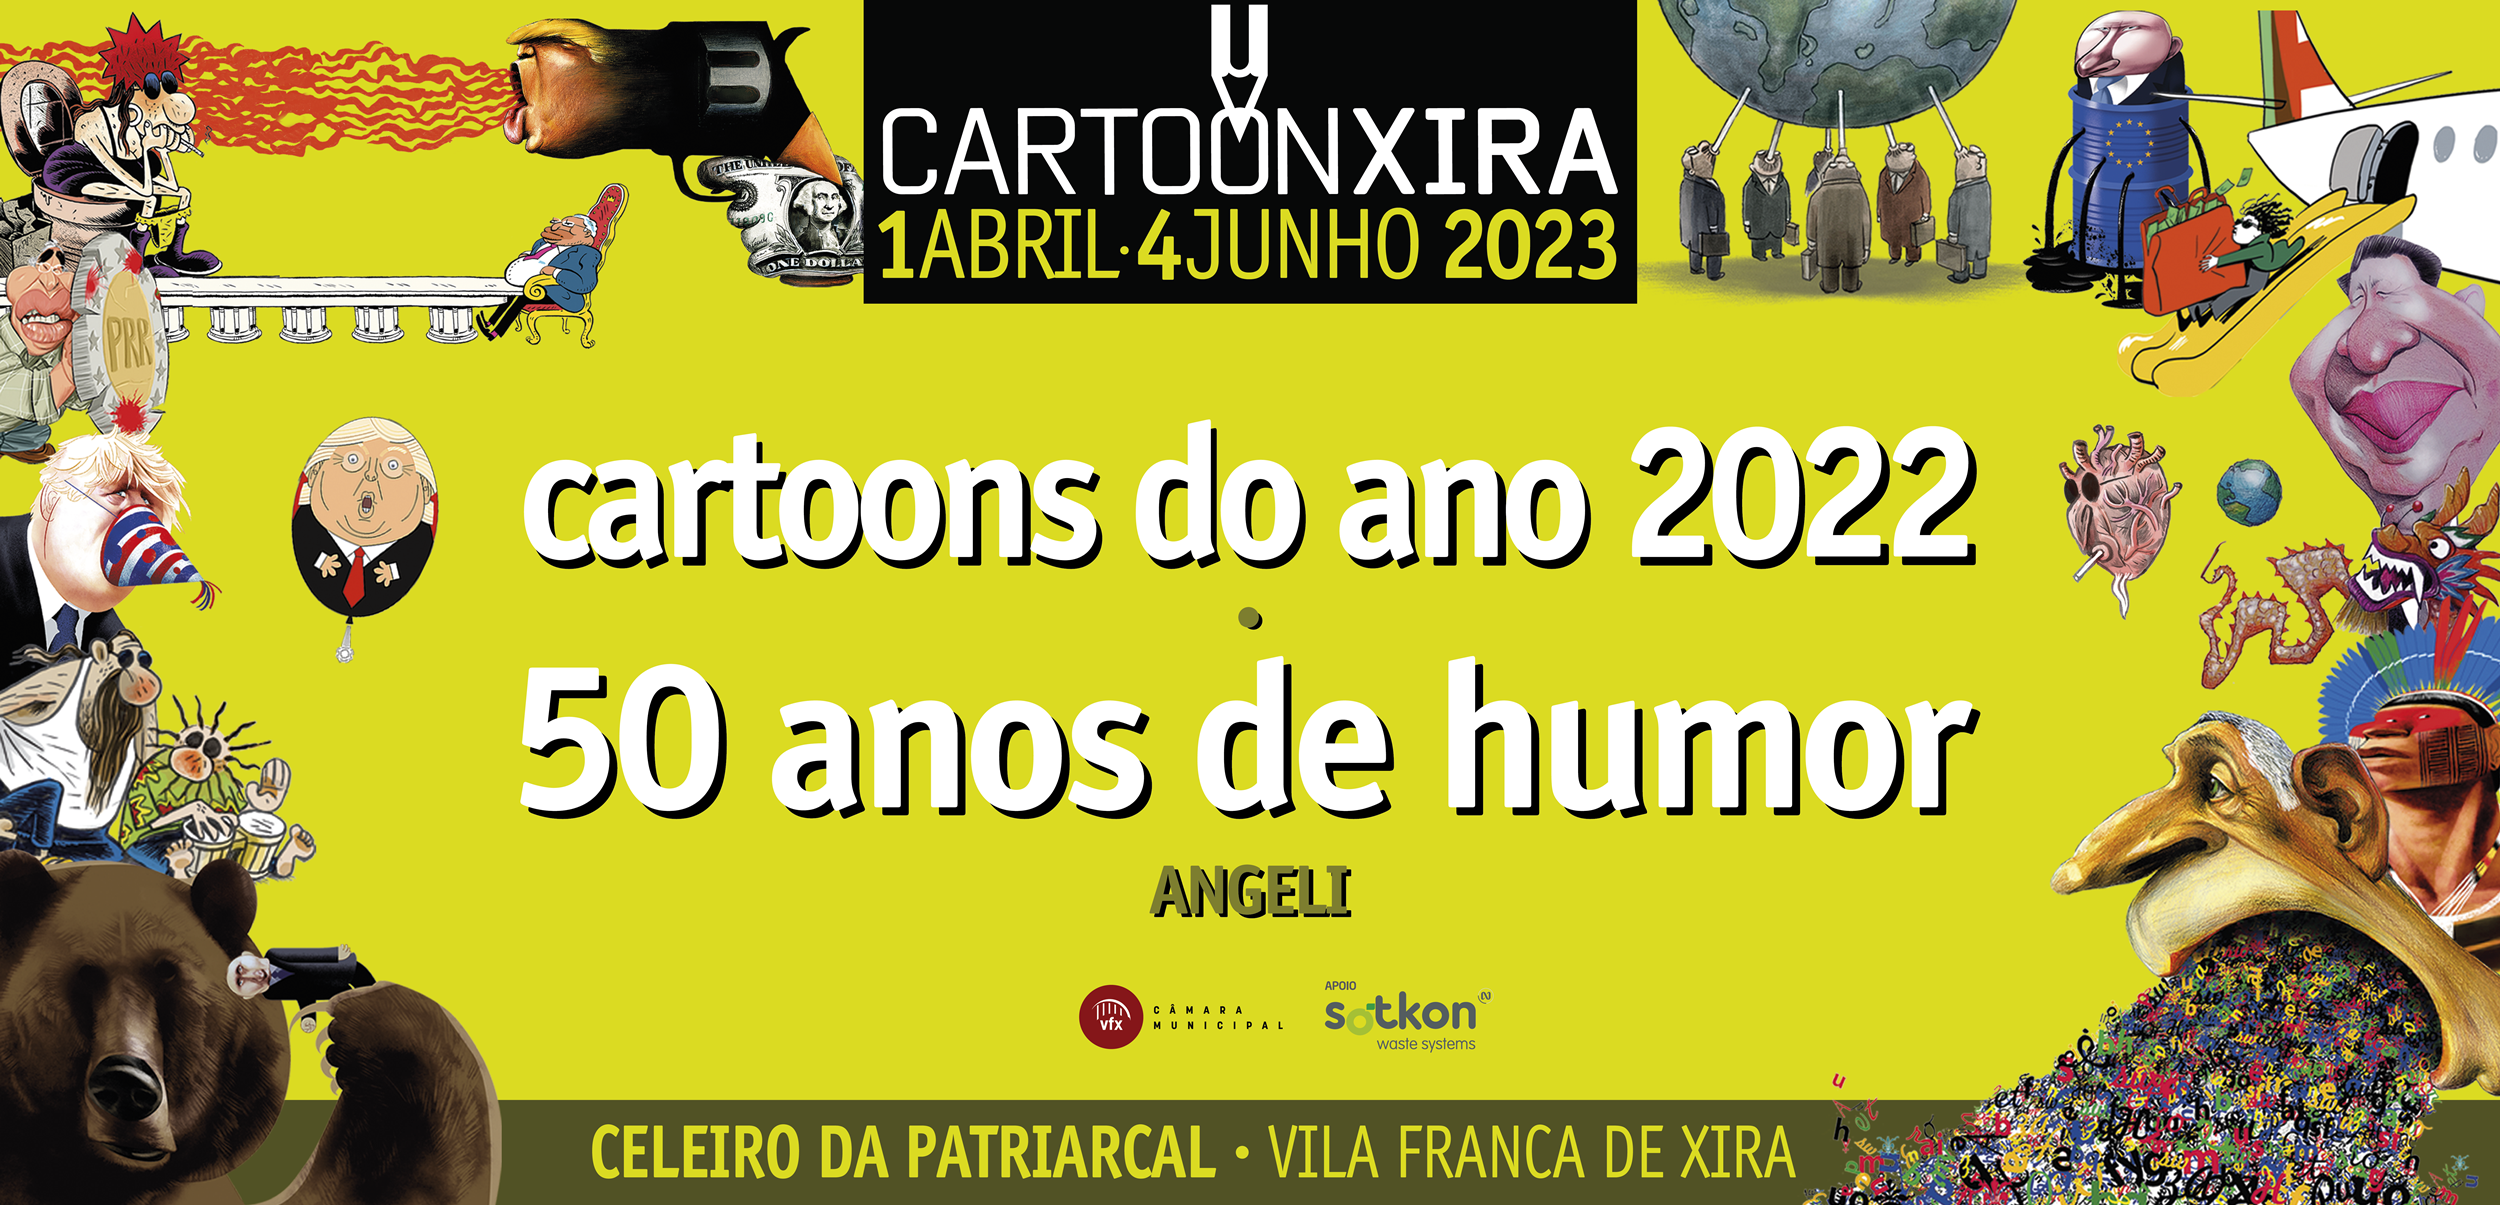 Melhores cartoons do ano de volta a Vila Franca de Xira